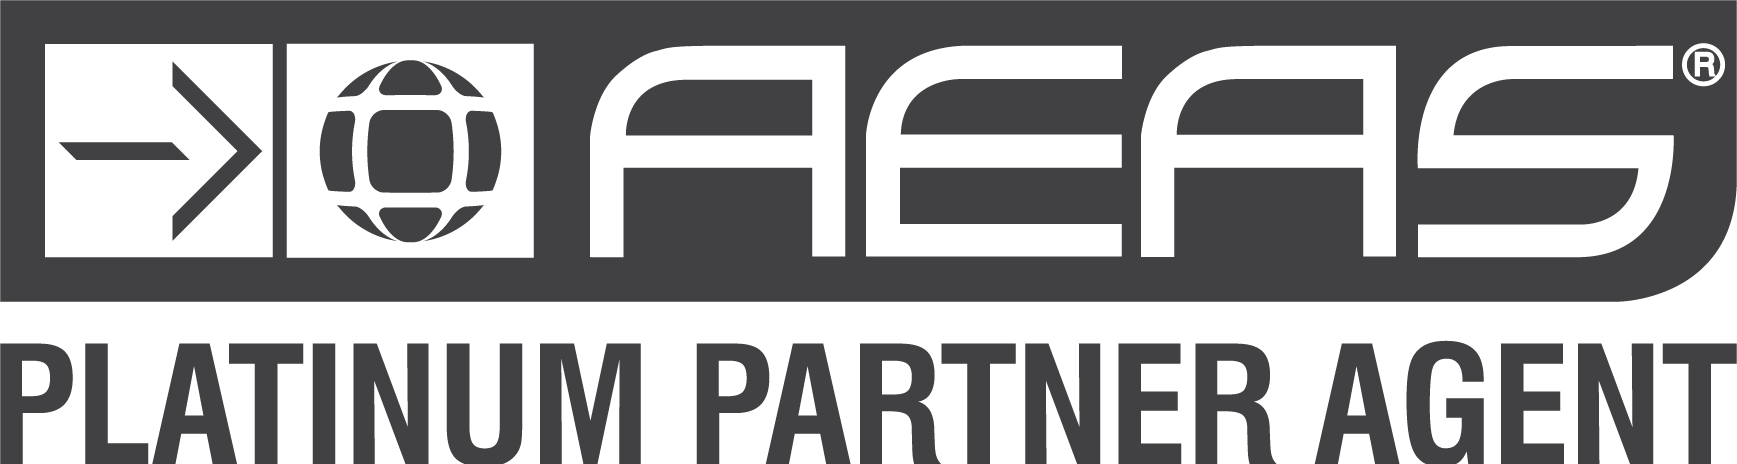 AEAS-Platinum Partner Agent